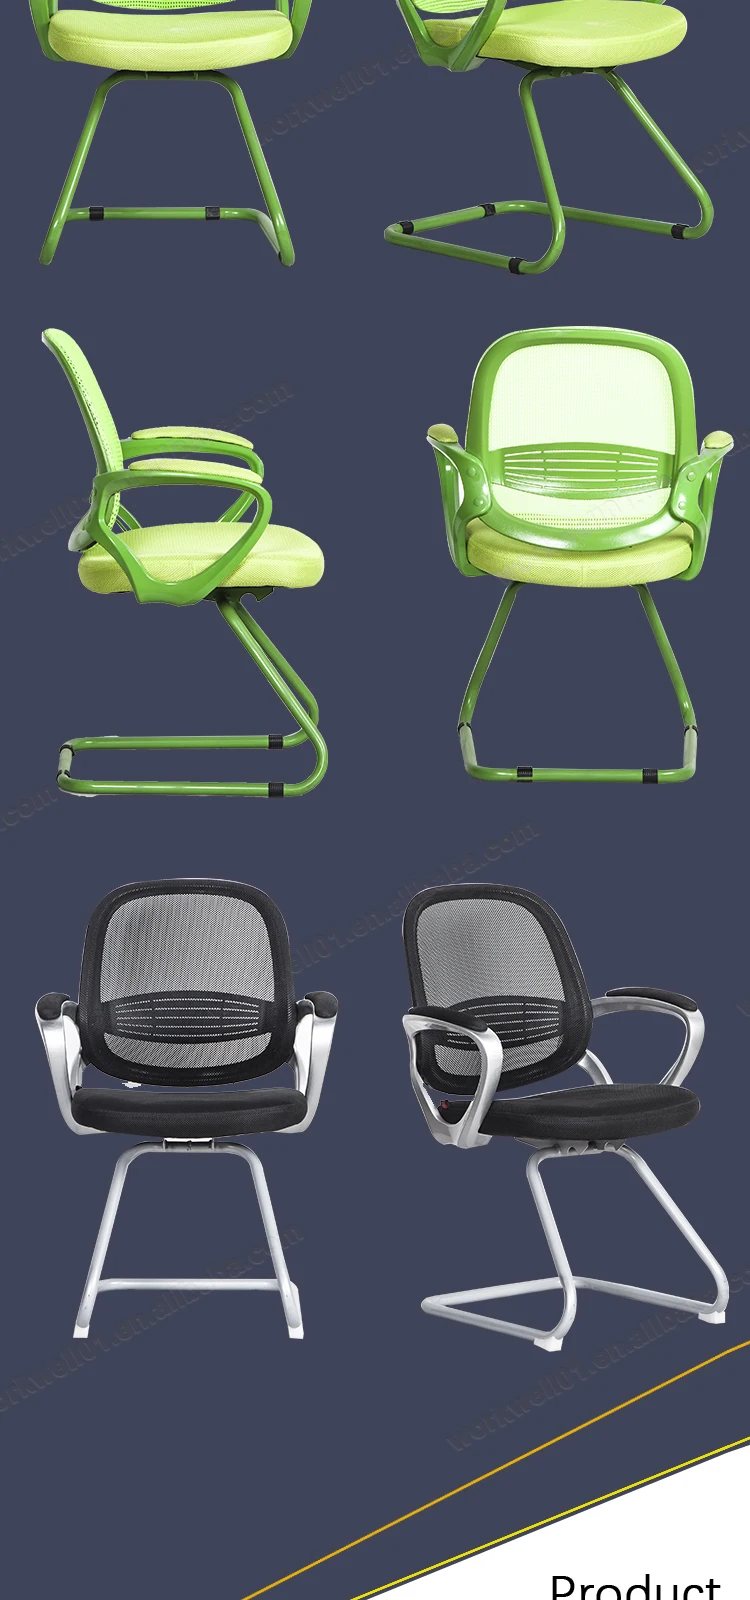 Mesh chair cheap butterfly mechanism office chair